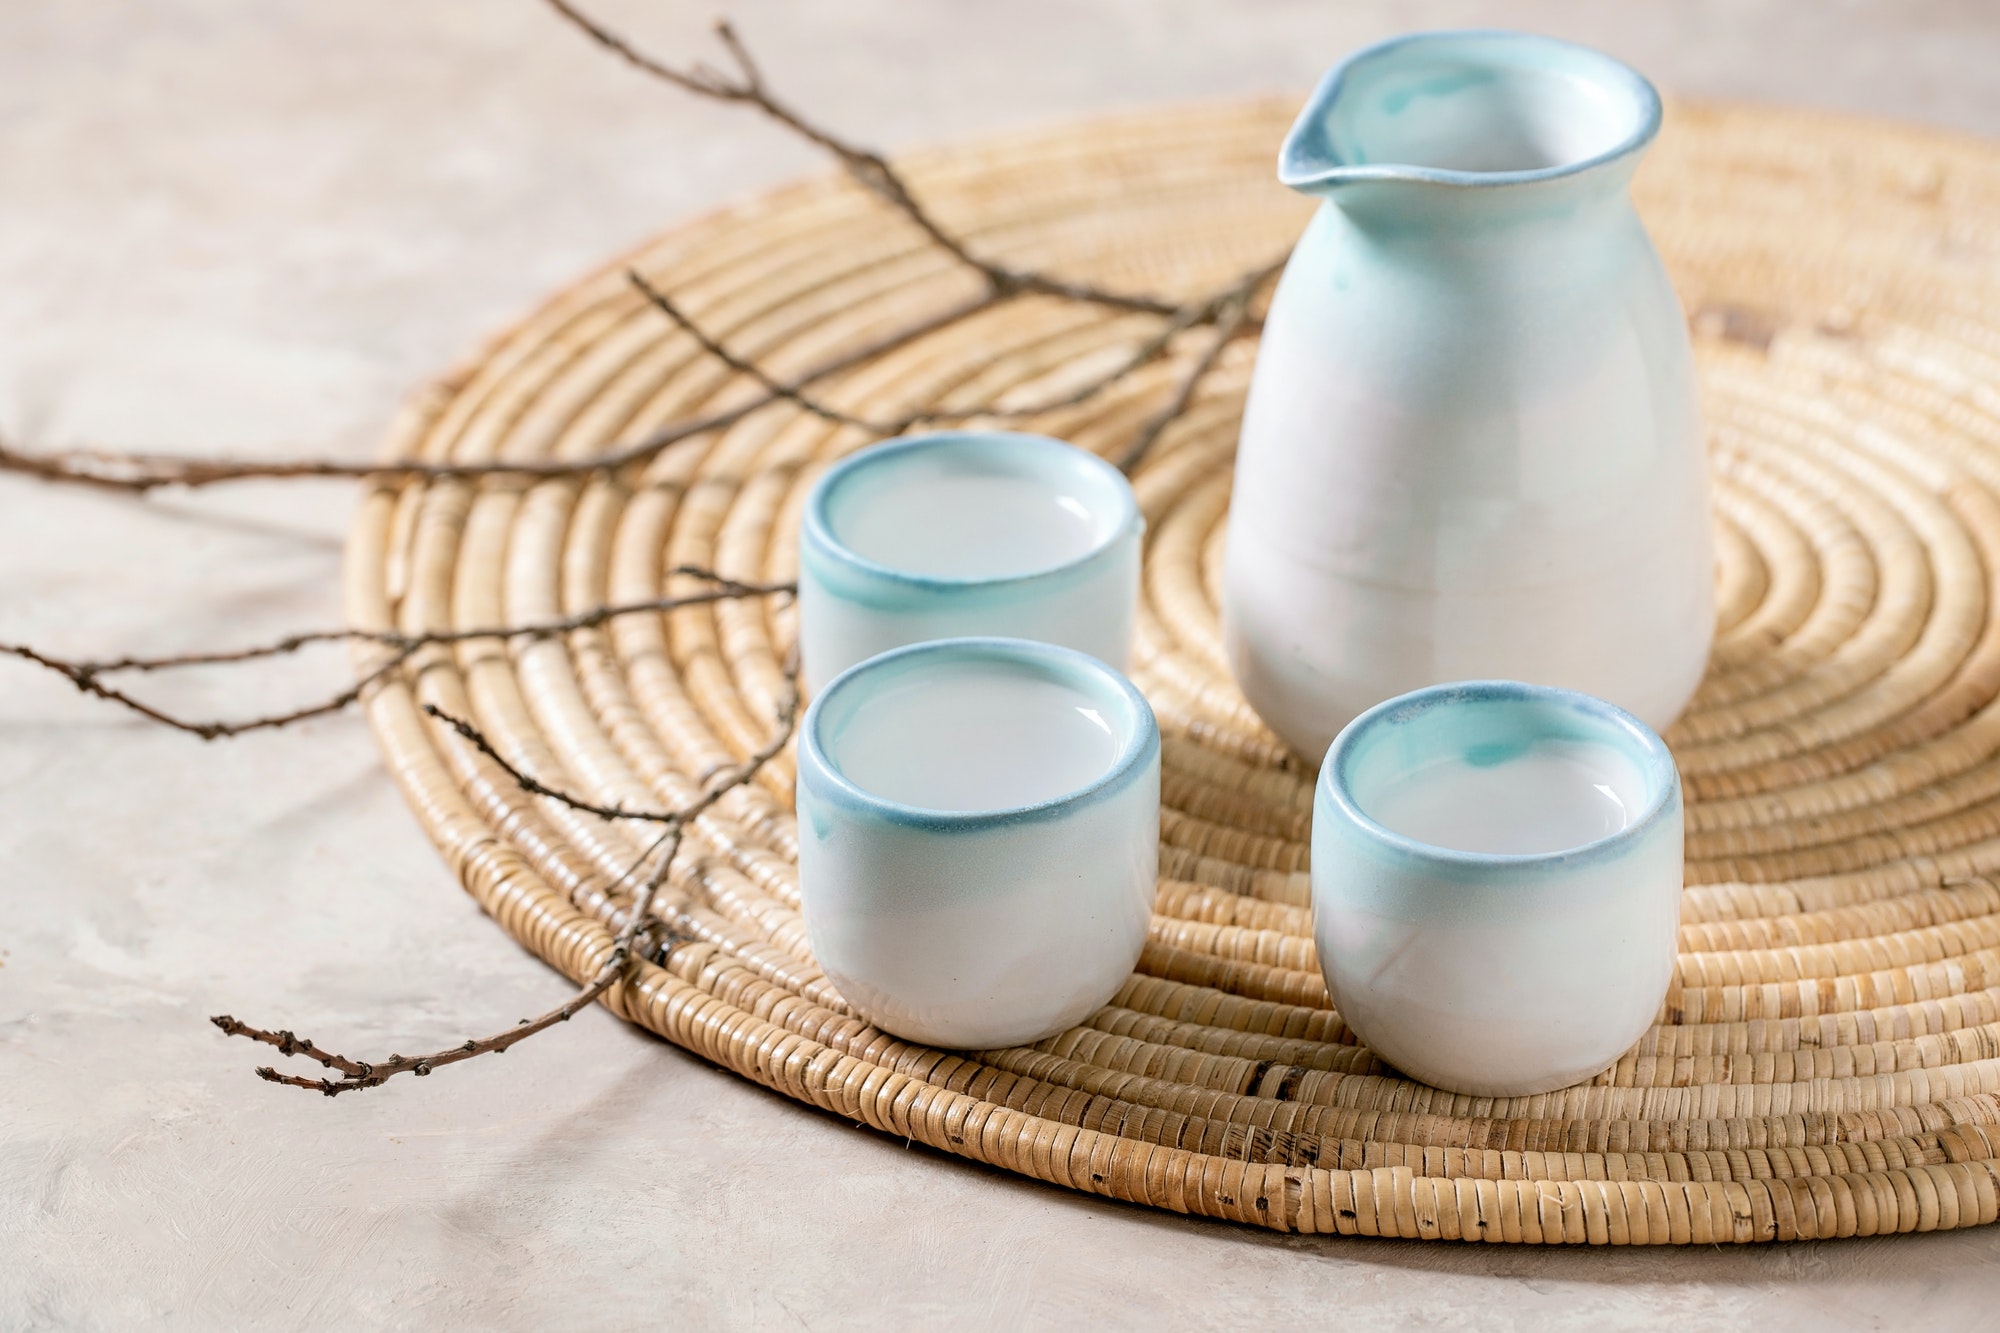 Sake ceramic set